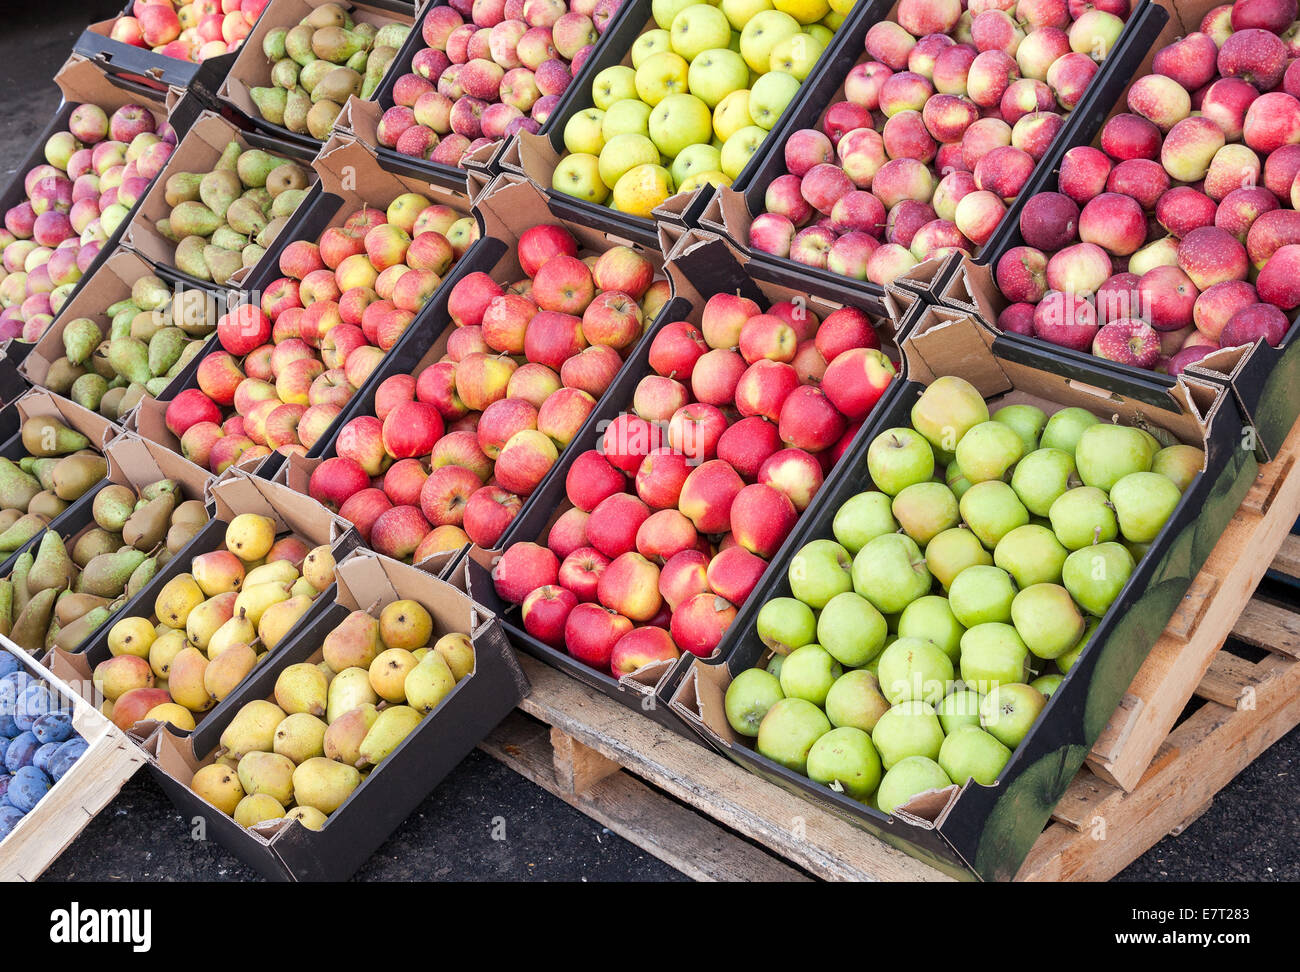 Яблоки купить рынок. Яблоки на рынке. Яблочный рынок. Яблоки на базаре. Рынок с фруктами с яблоками.